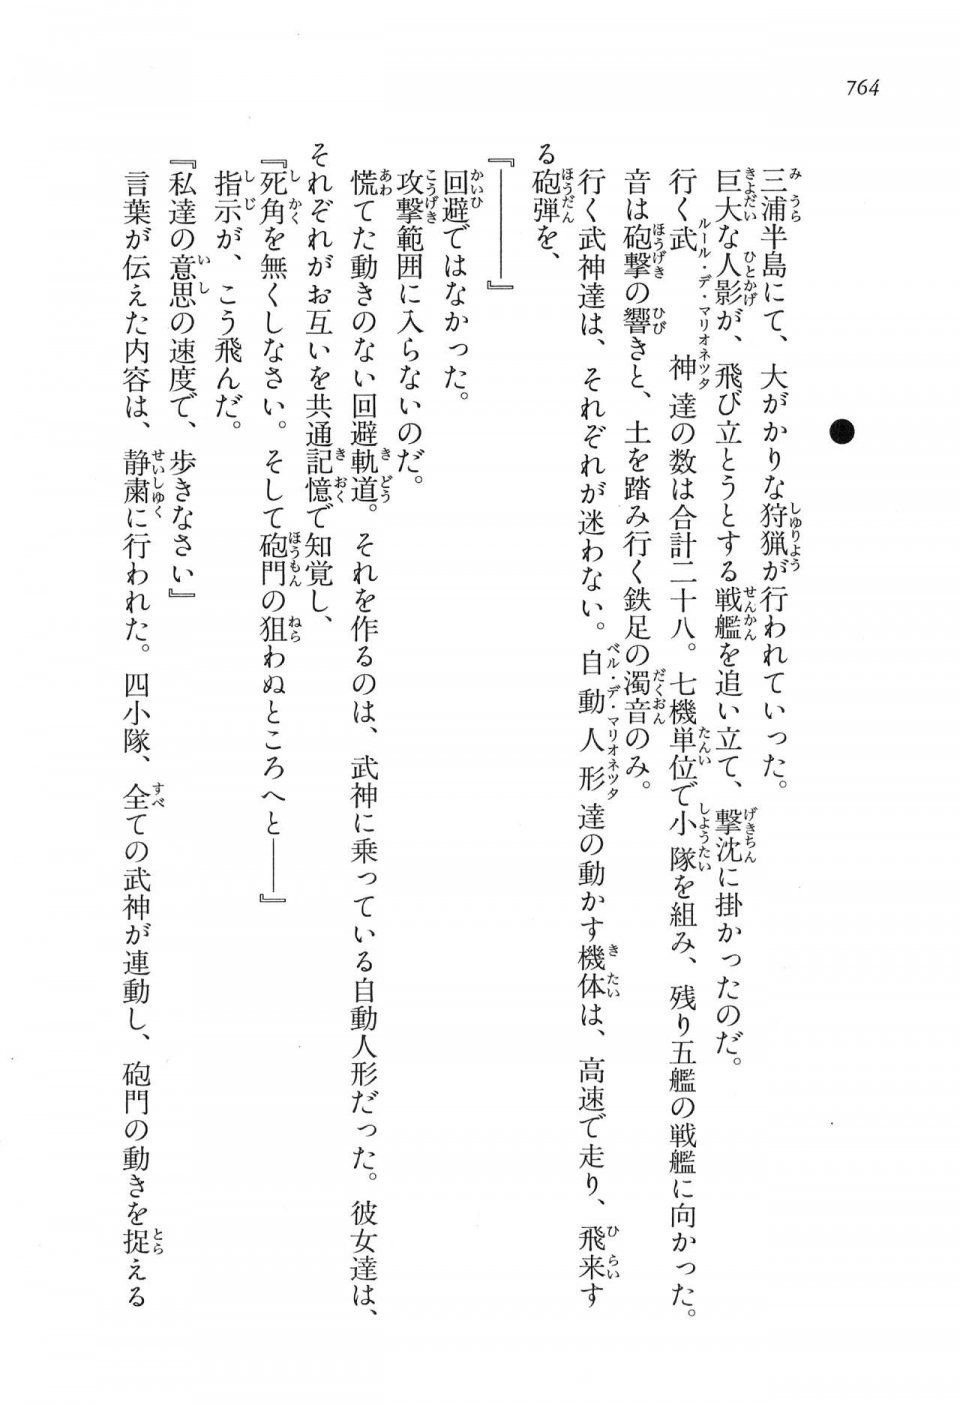 Kyoukai Senjou no Horizon LN Vol 16(7A) - Photo #764